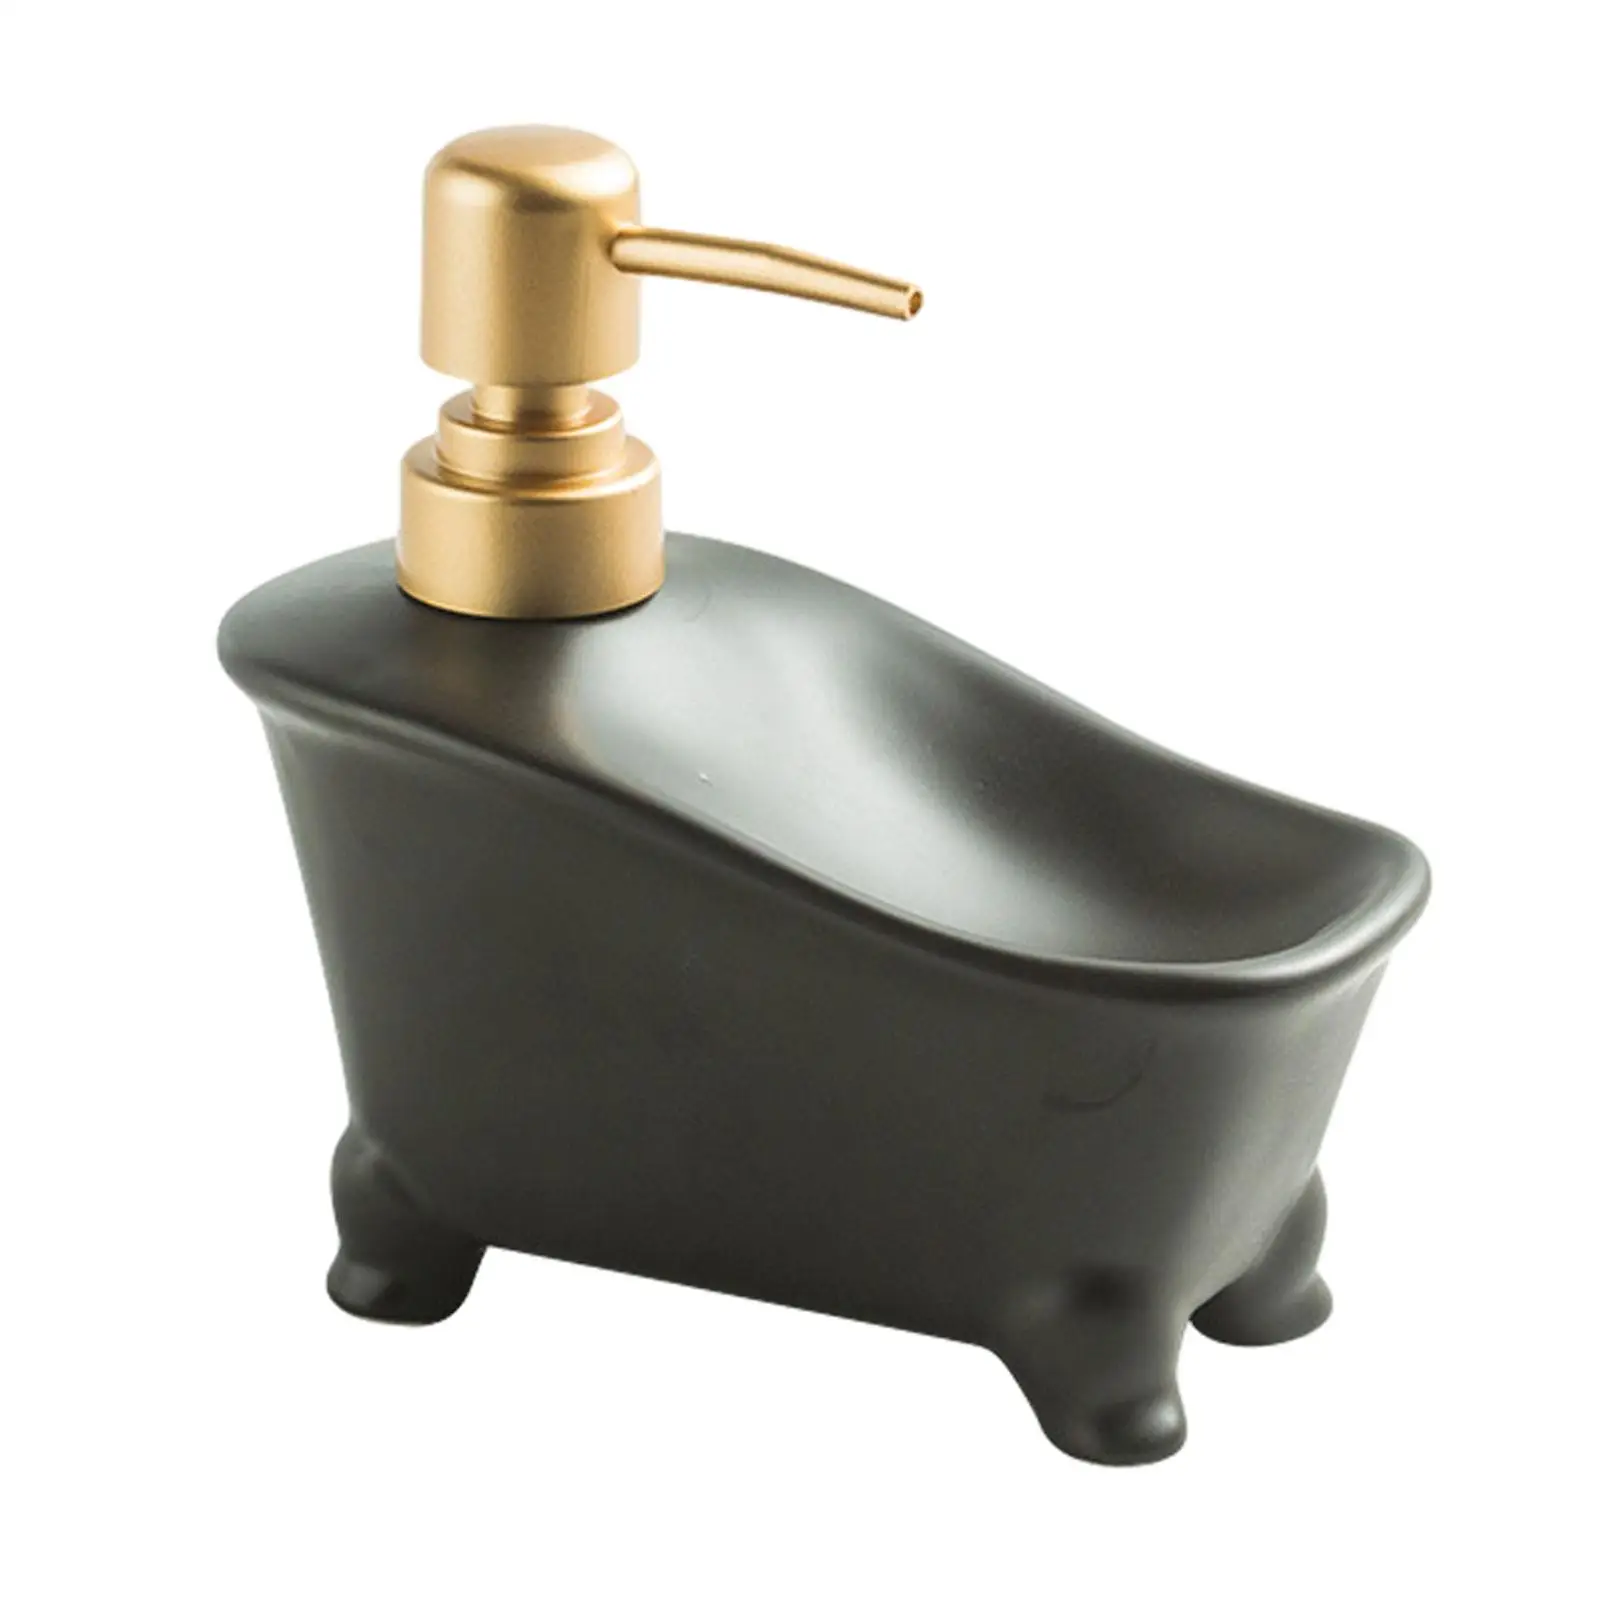 Dual Use Soap Dispenser Ceramic Bathroom Liquid Container Pump Bottle Dispenser for Hotel Countertop Bathroom Laundry Room